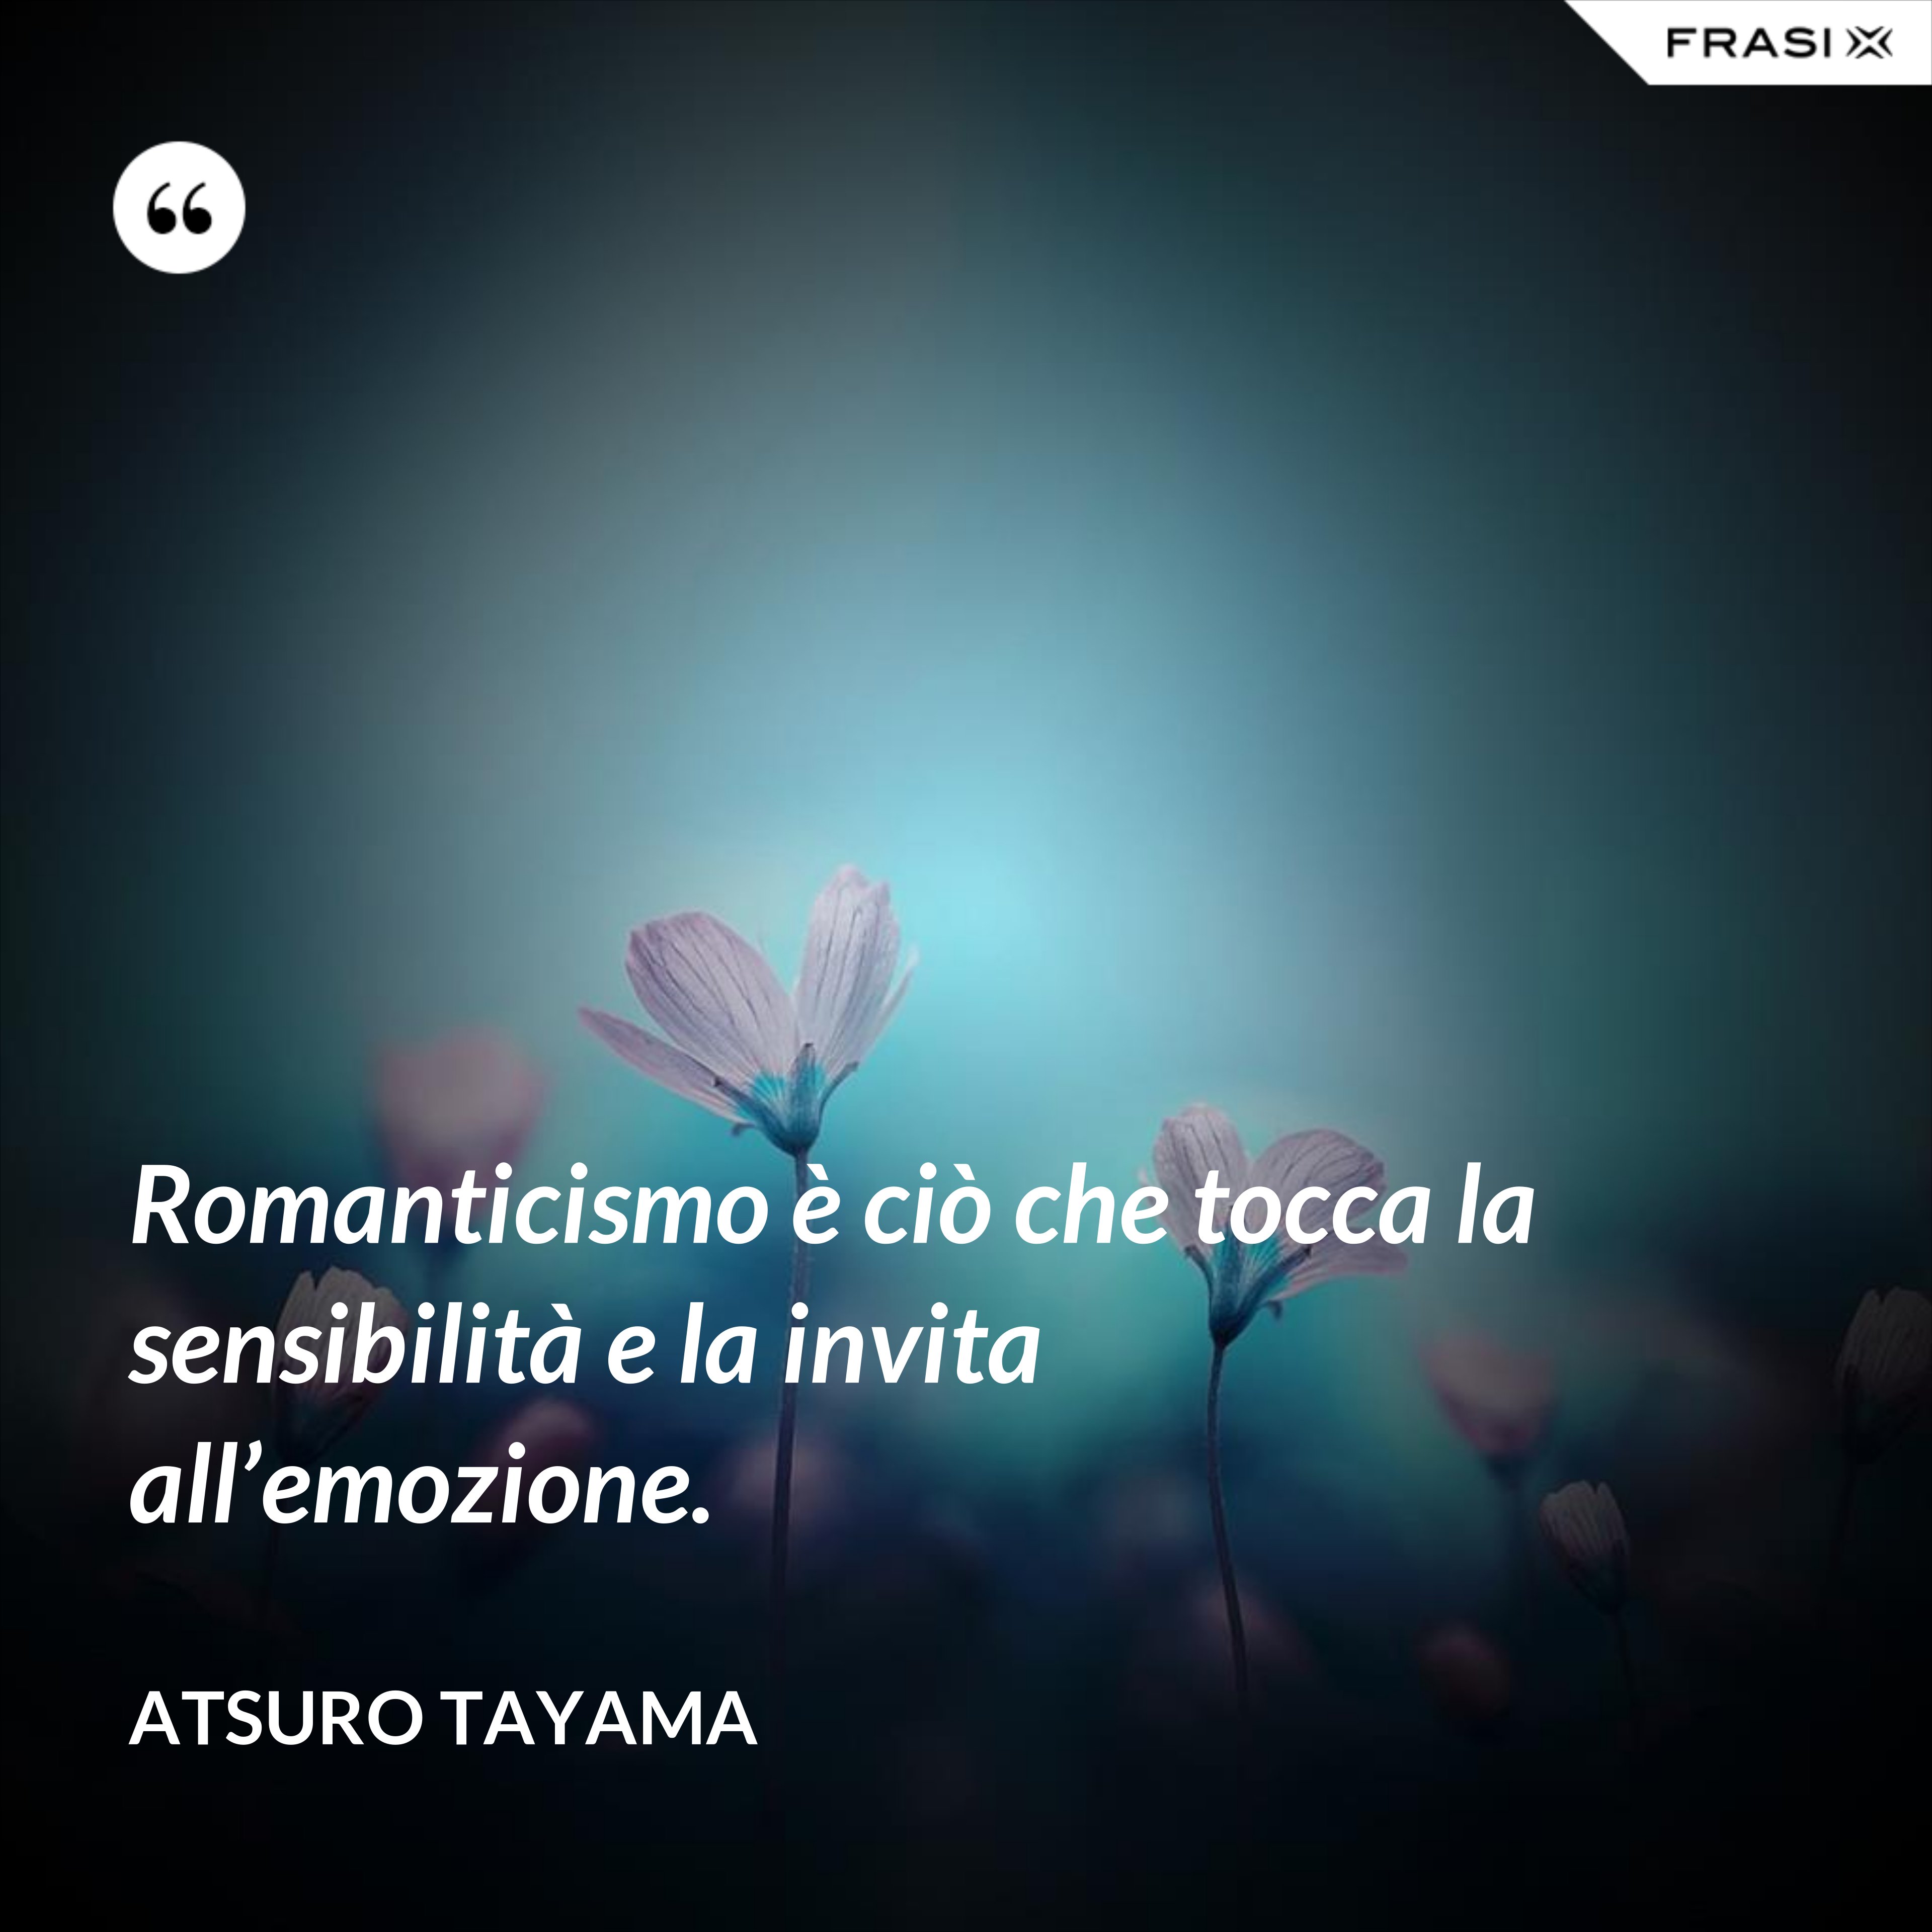 Romanticismo è ciò che tocca la sensibilità e la invita all’emozione. - Atsuro Tayama